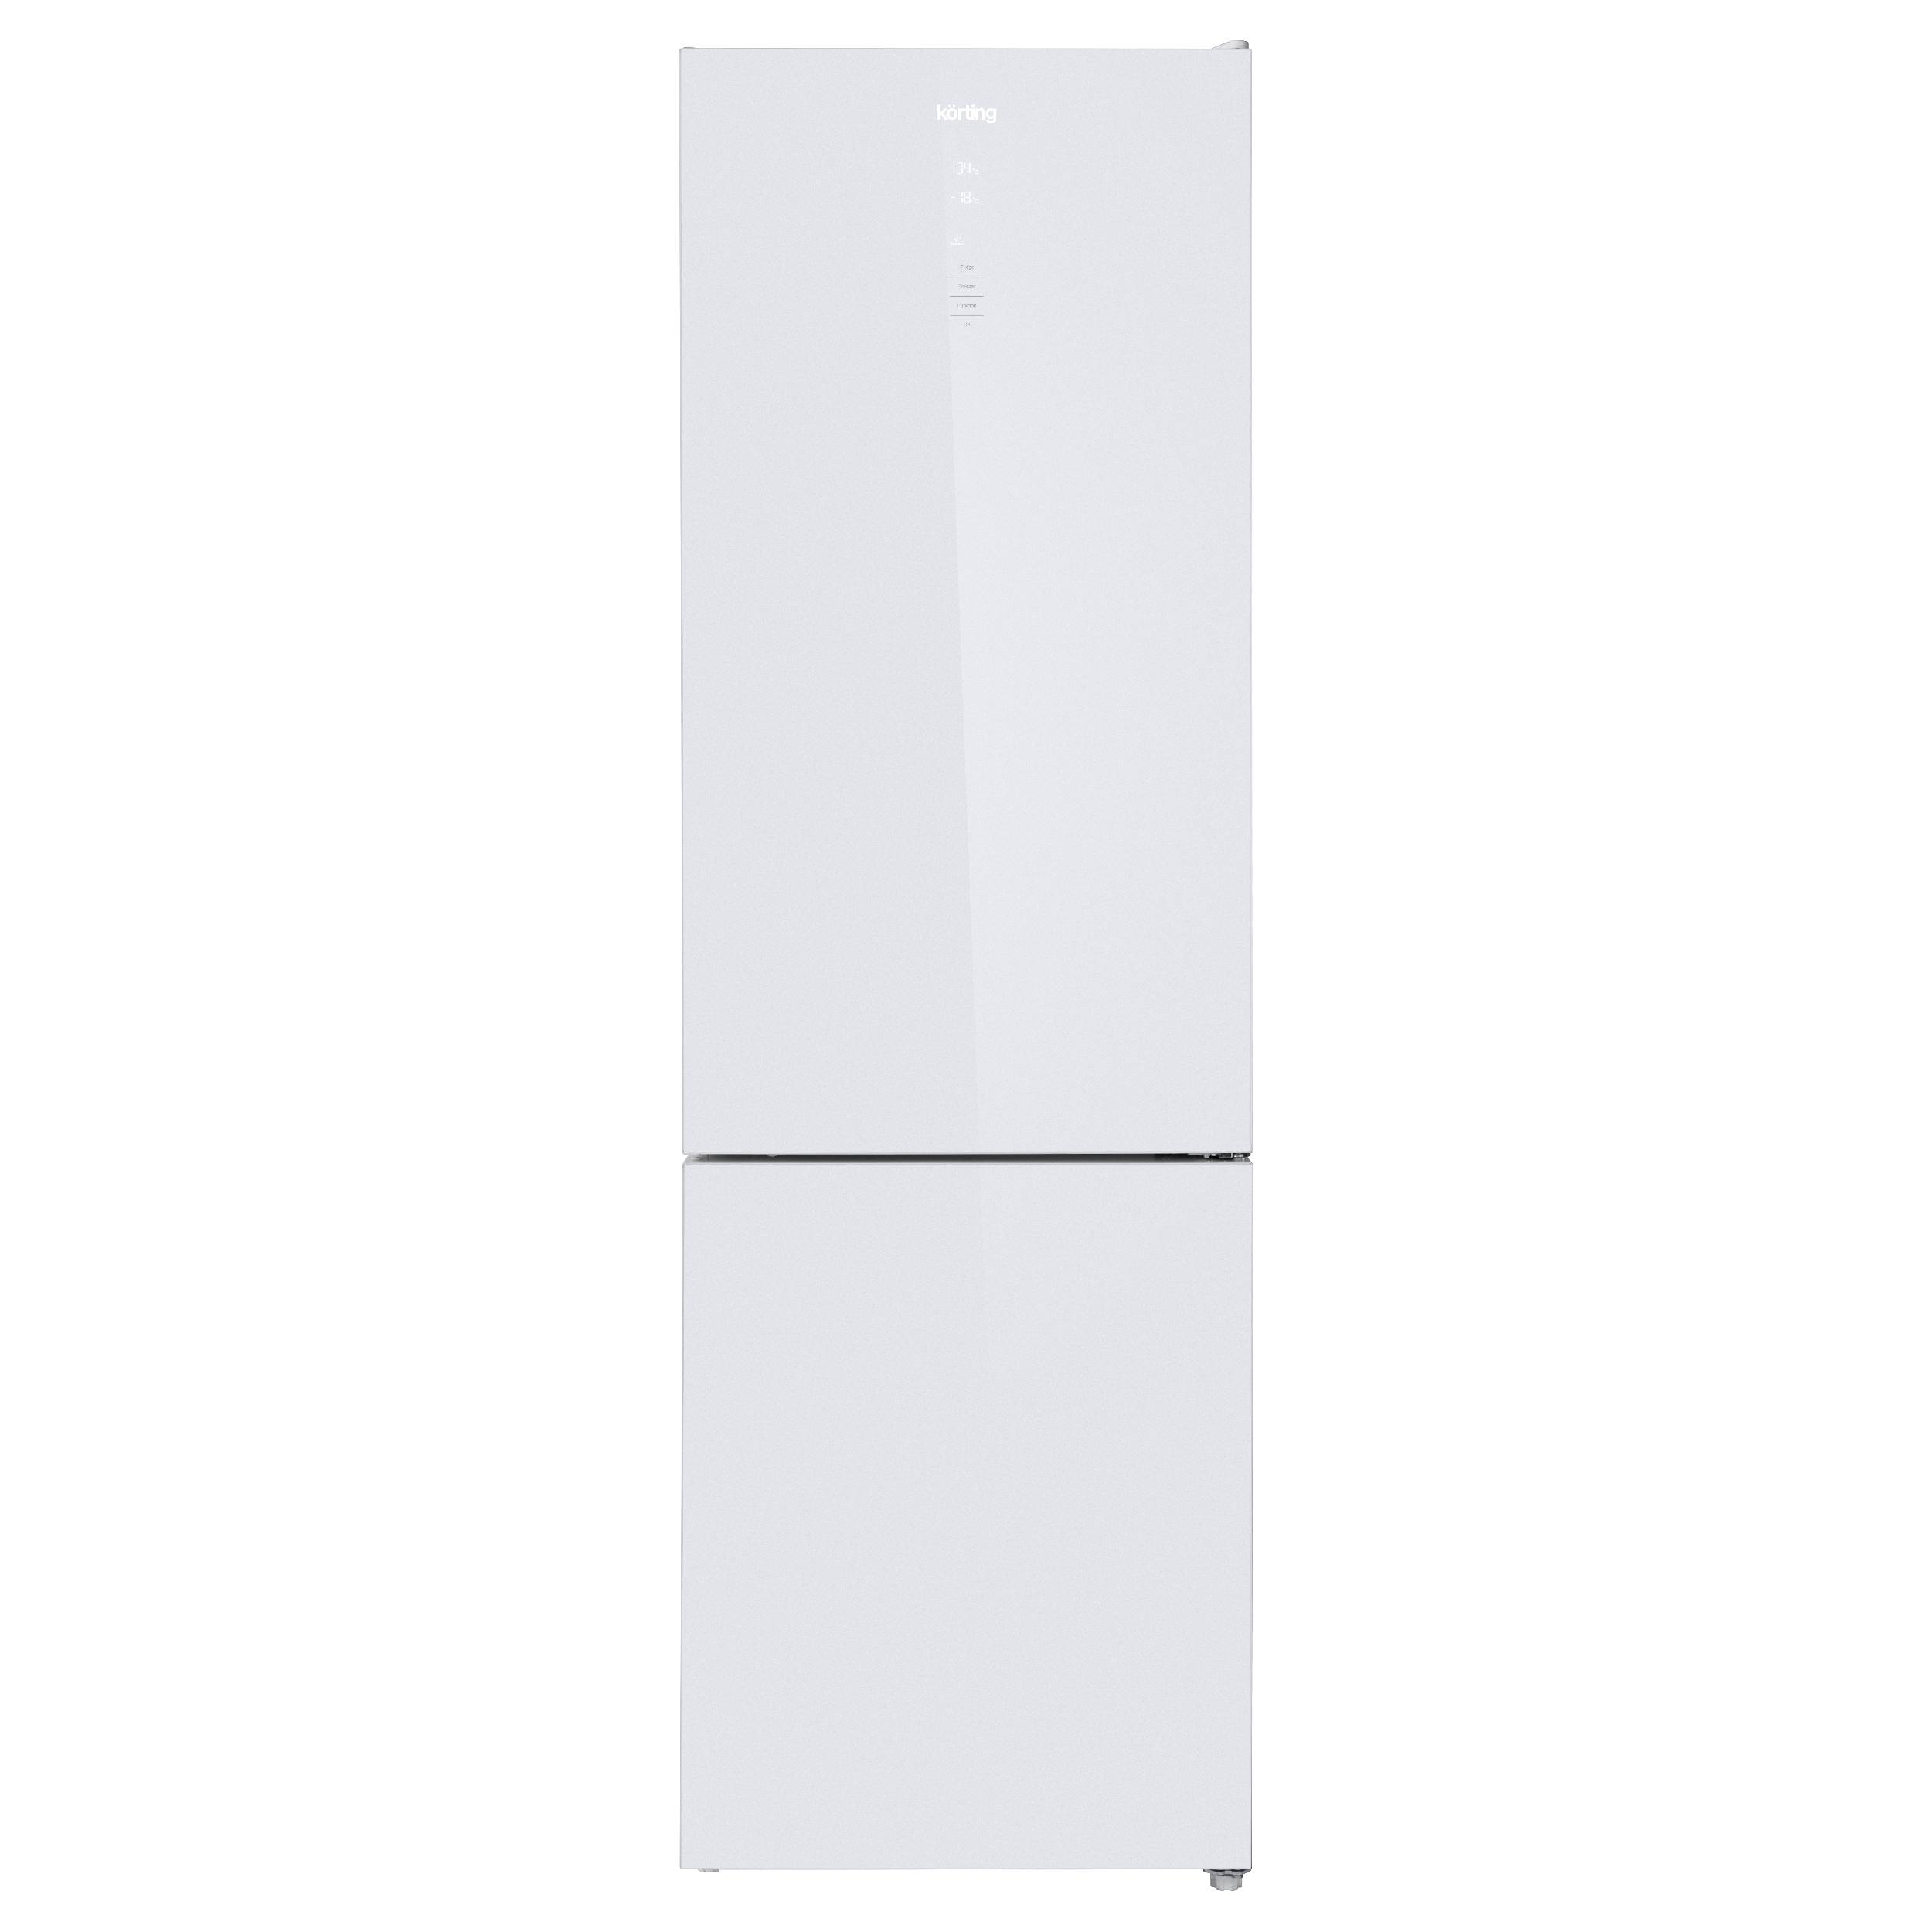 Холодильник Korting KNFC 62370 GW белый, серебристый холодильник korting knfc 71928 gw белый